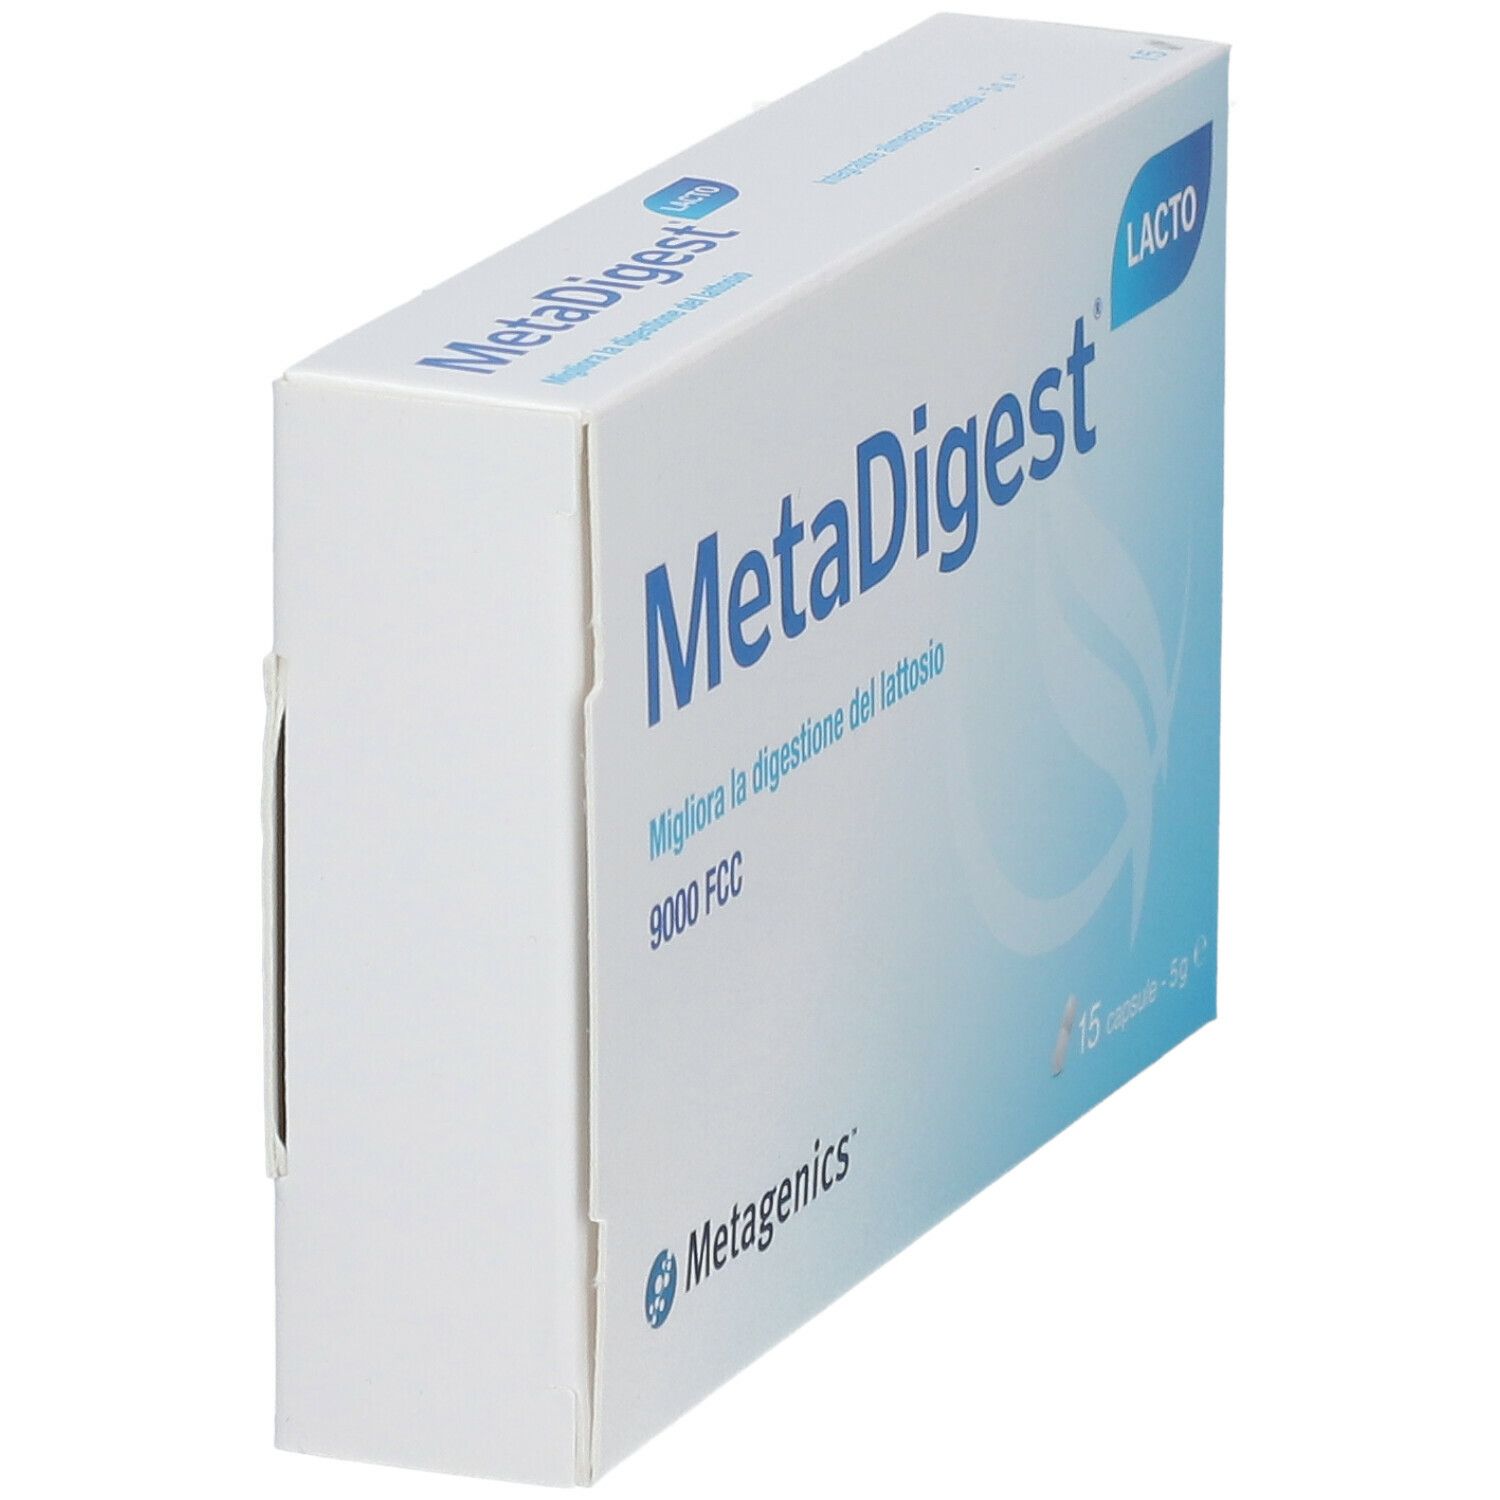 Metagenics™ MetaDigest® Lacto